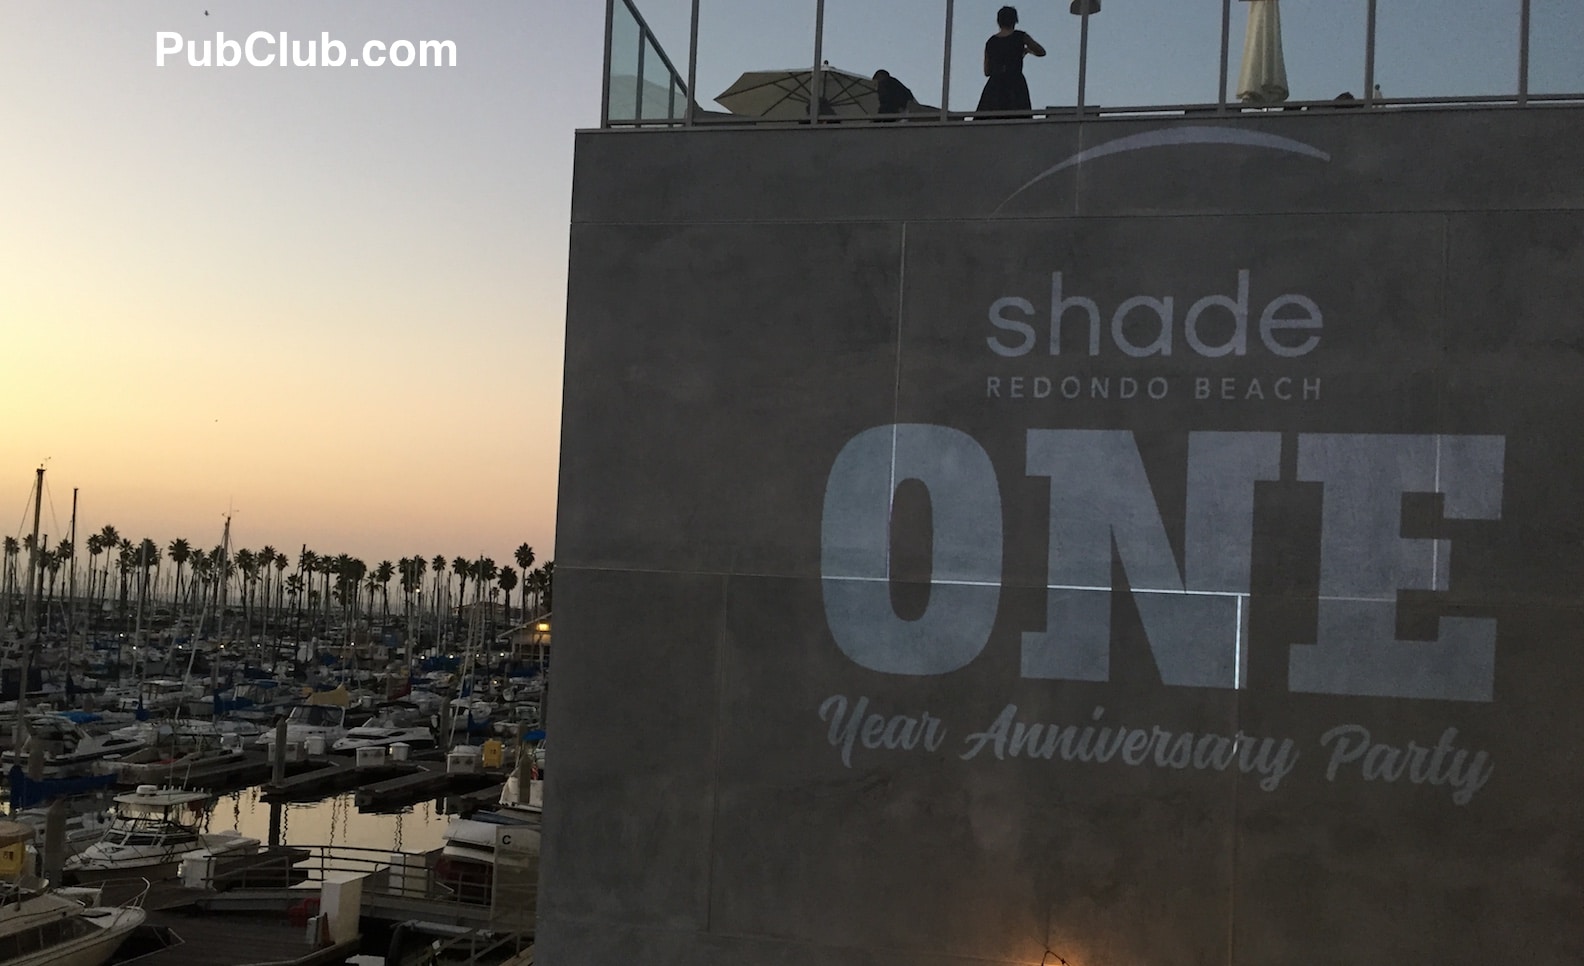 Shade Hotel Redondo Beach 1 year anniversary party